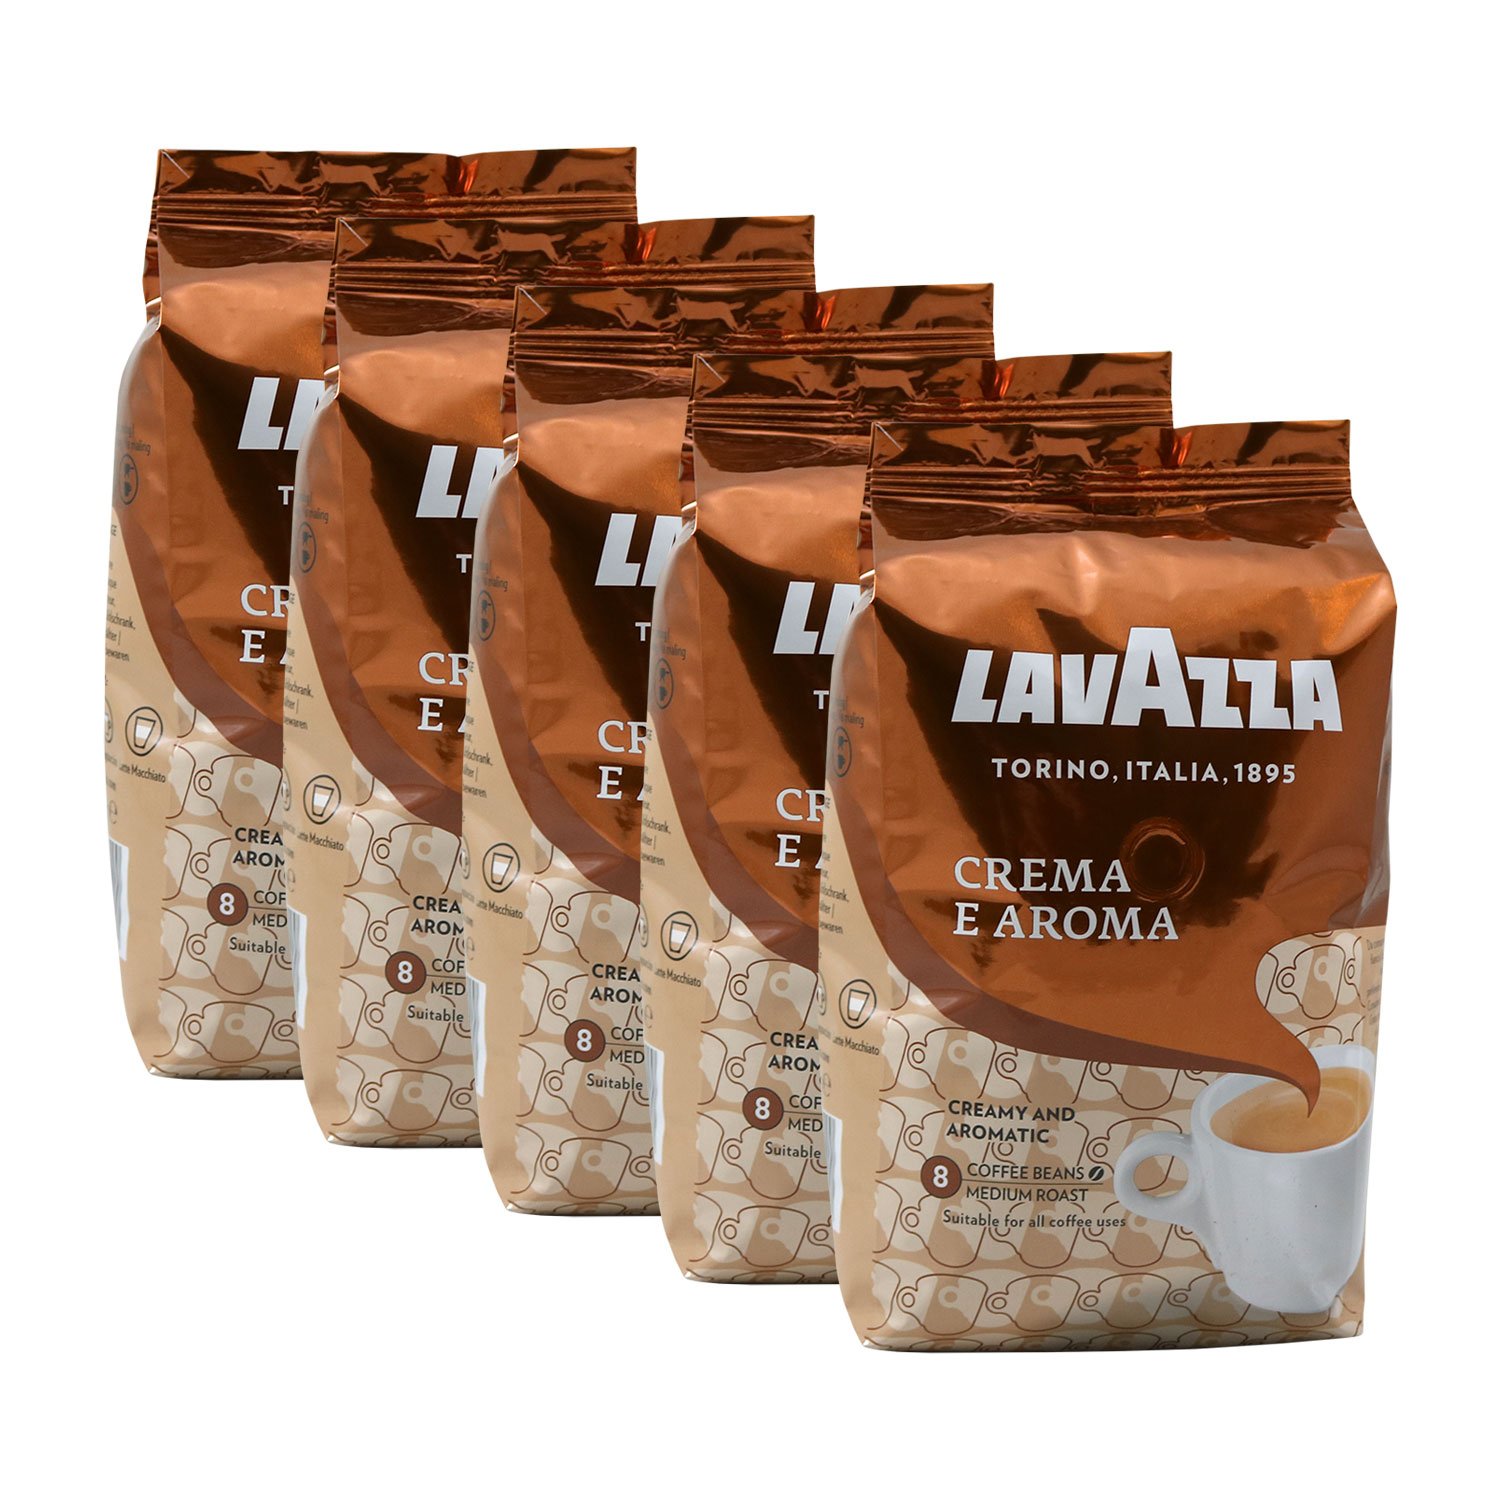 Lavazza Coffee Crema E Aroma (5 x 1 kg pack)